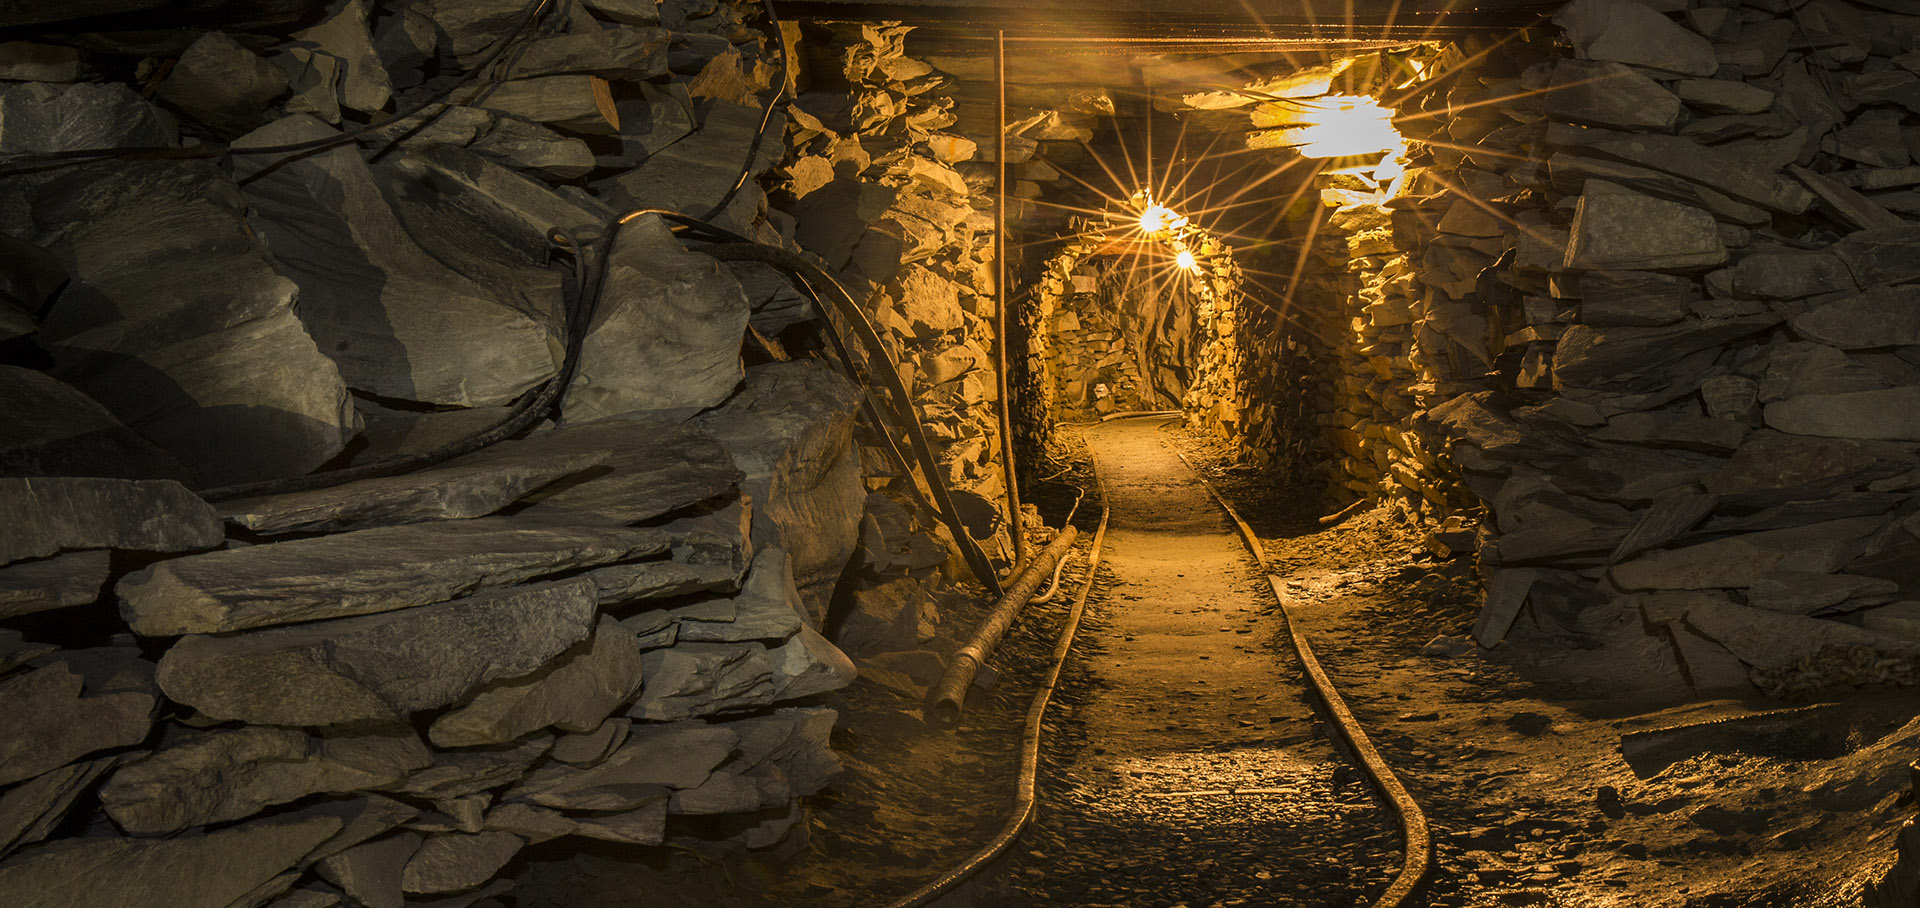 Maden işçileri ücretlerini düzenli alamadıkları gerekçesiyle iş durdurdu